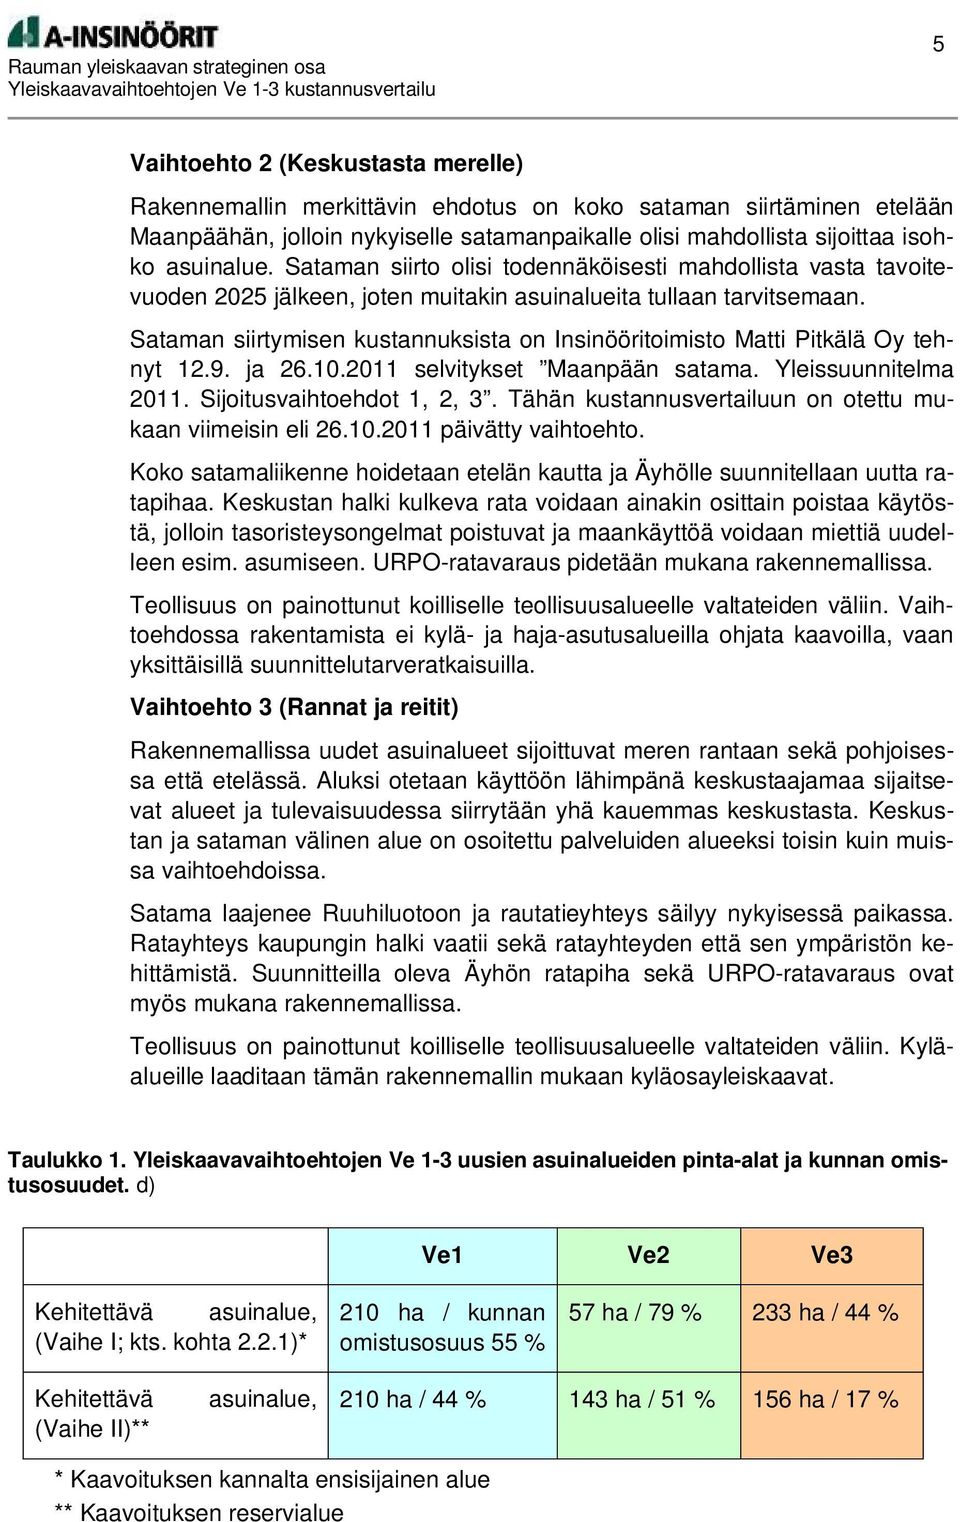 Sataman siirtymisen kustannuksista on Insinööritoimisto Matti Pitkälä Oy tehnyt 12.9. ja 26.10.2011 selvitykset Maanpään satama. Yleissuunnitelma 2011. Sijoitusvaihtoehdot 1, 2, 3.